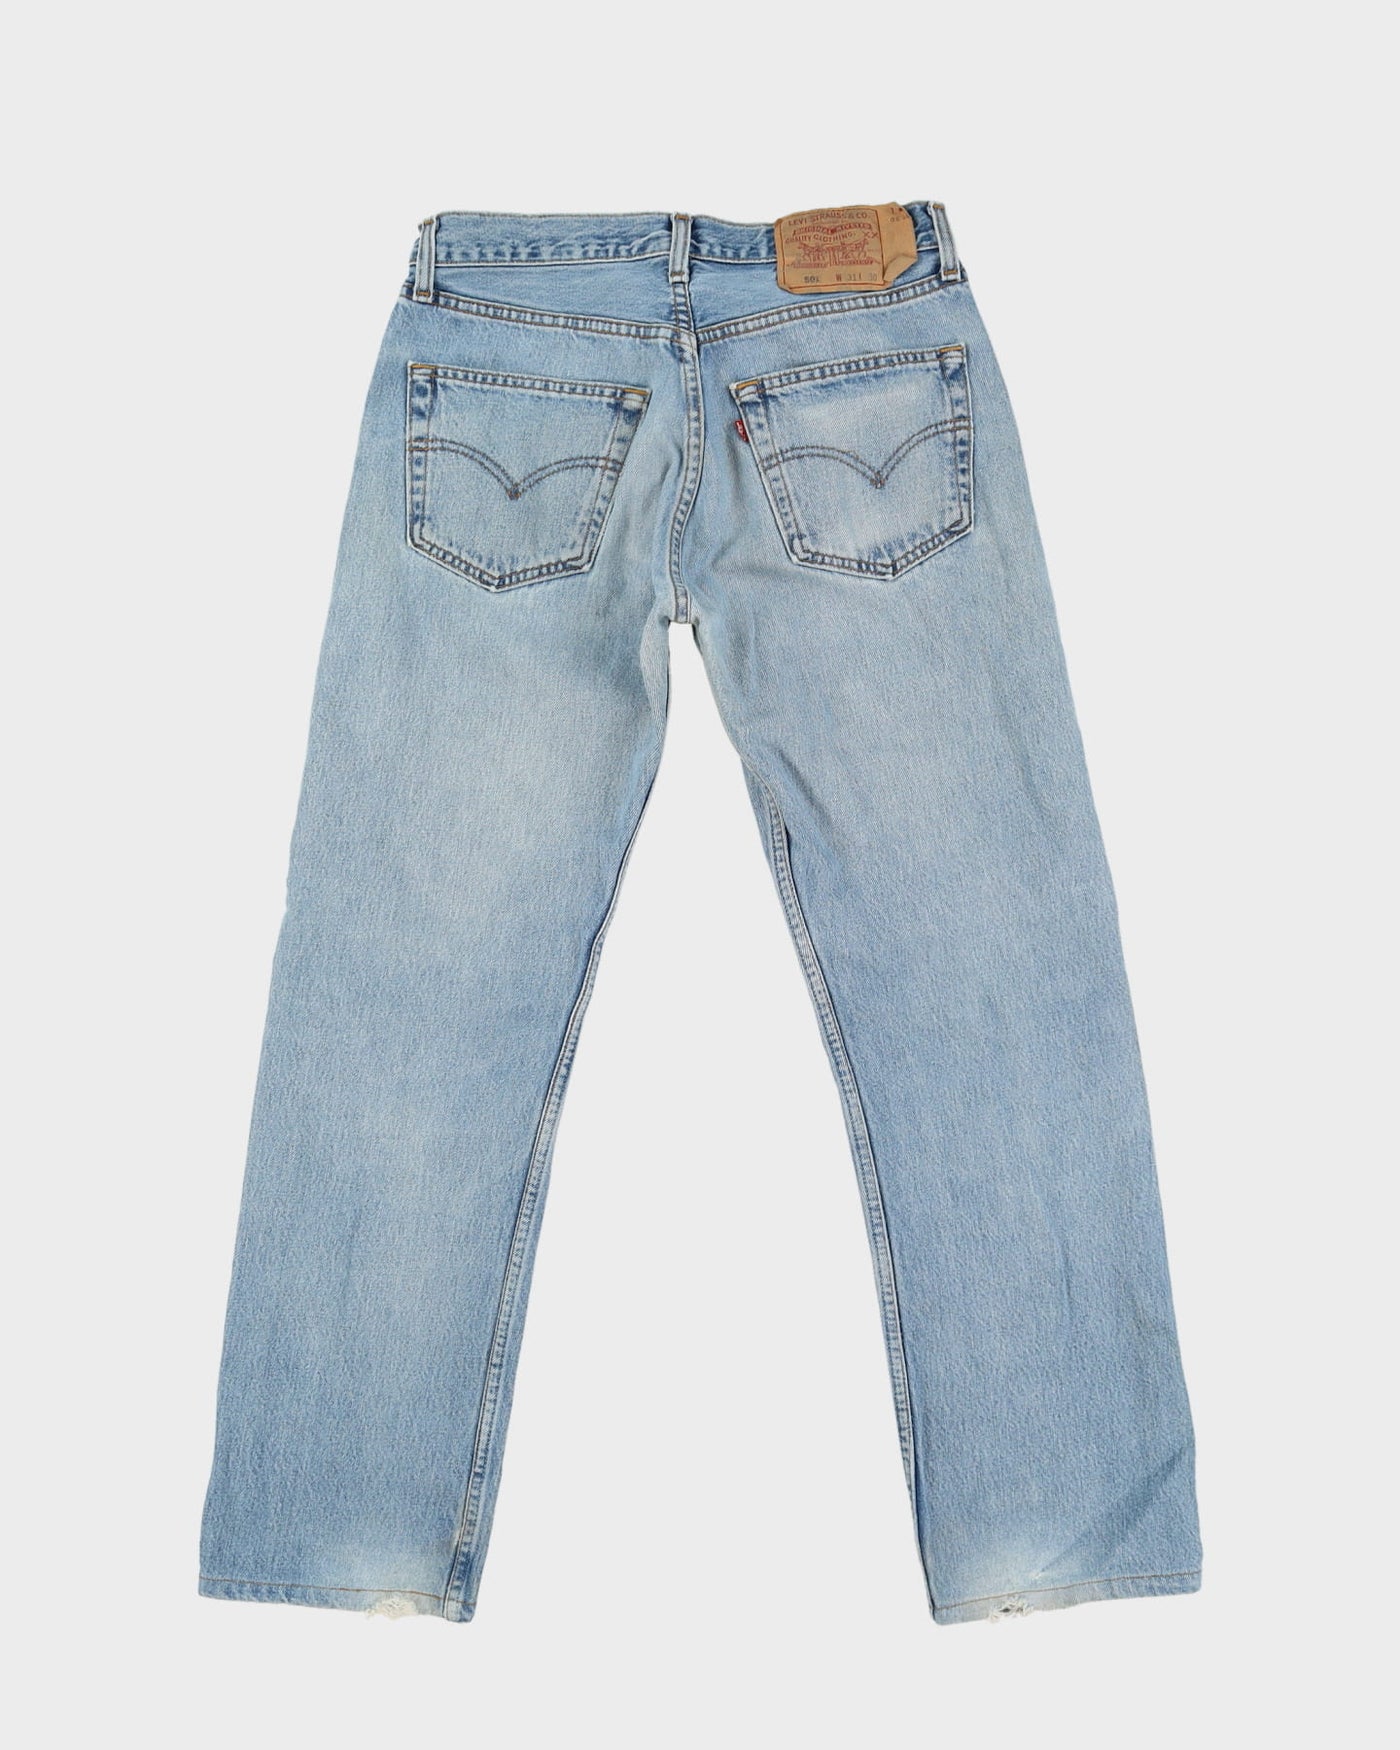 Vintage 90s Levi's 501 Blue Light Wash Jeans - W30 L28